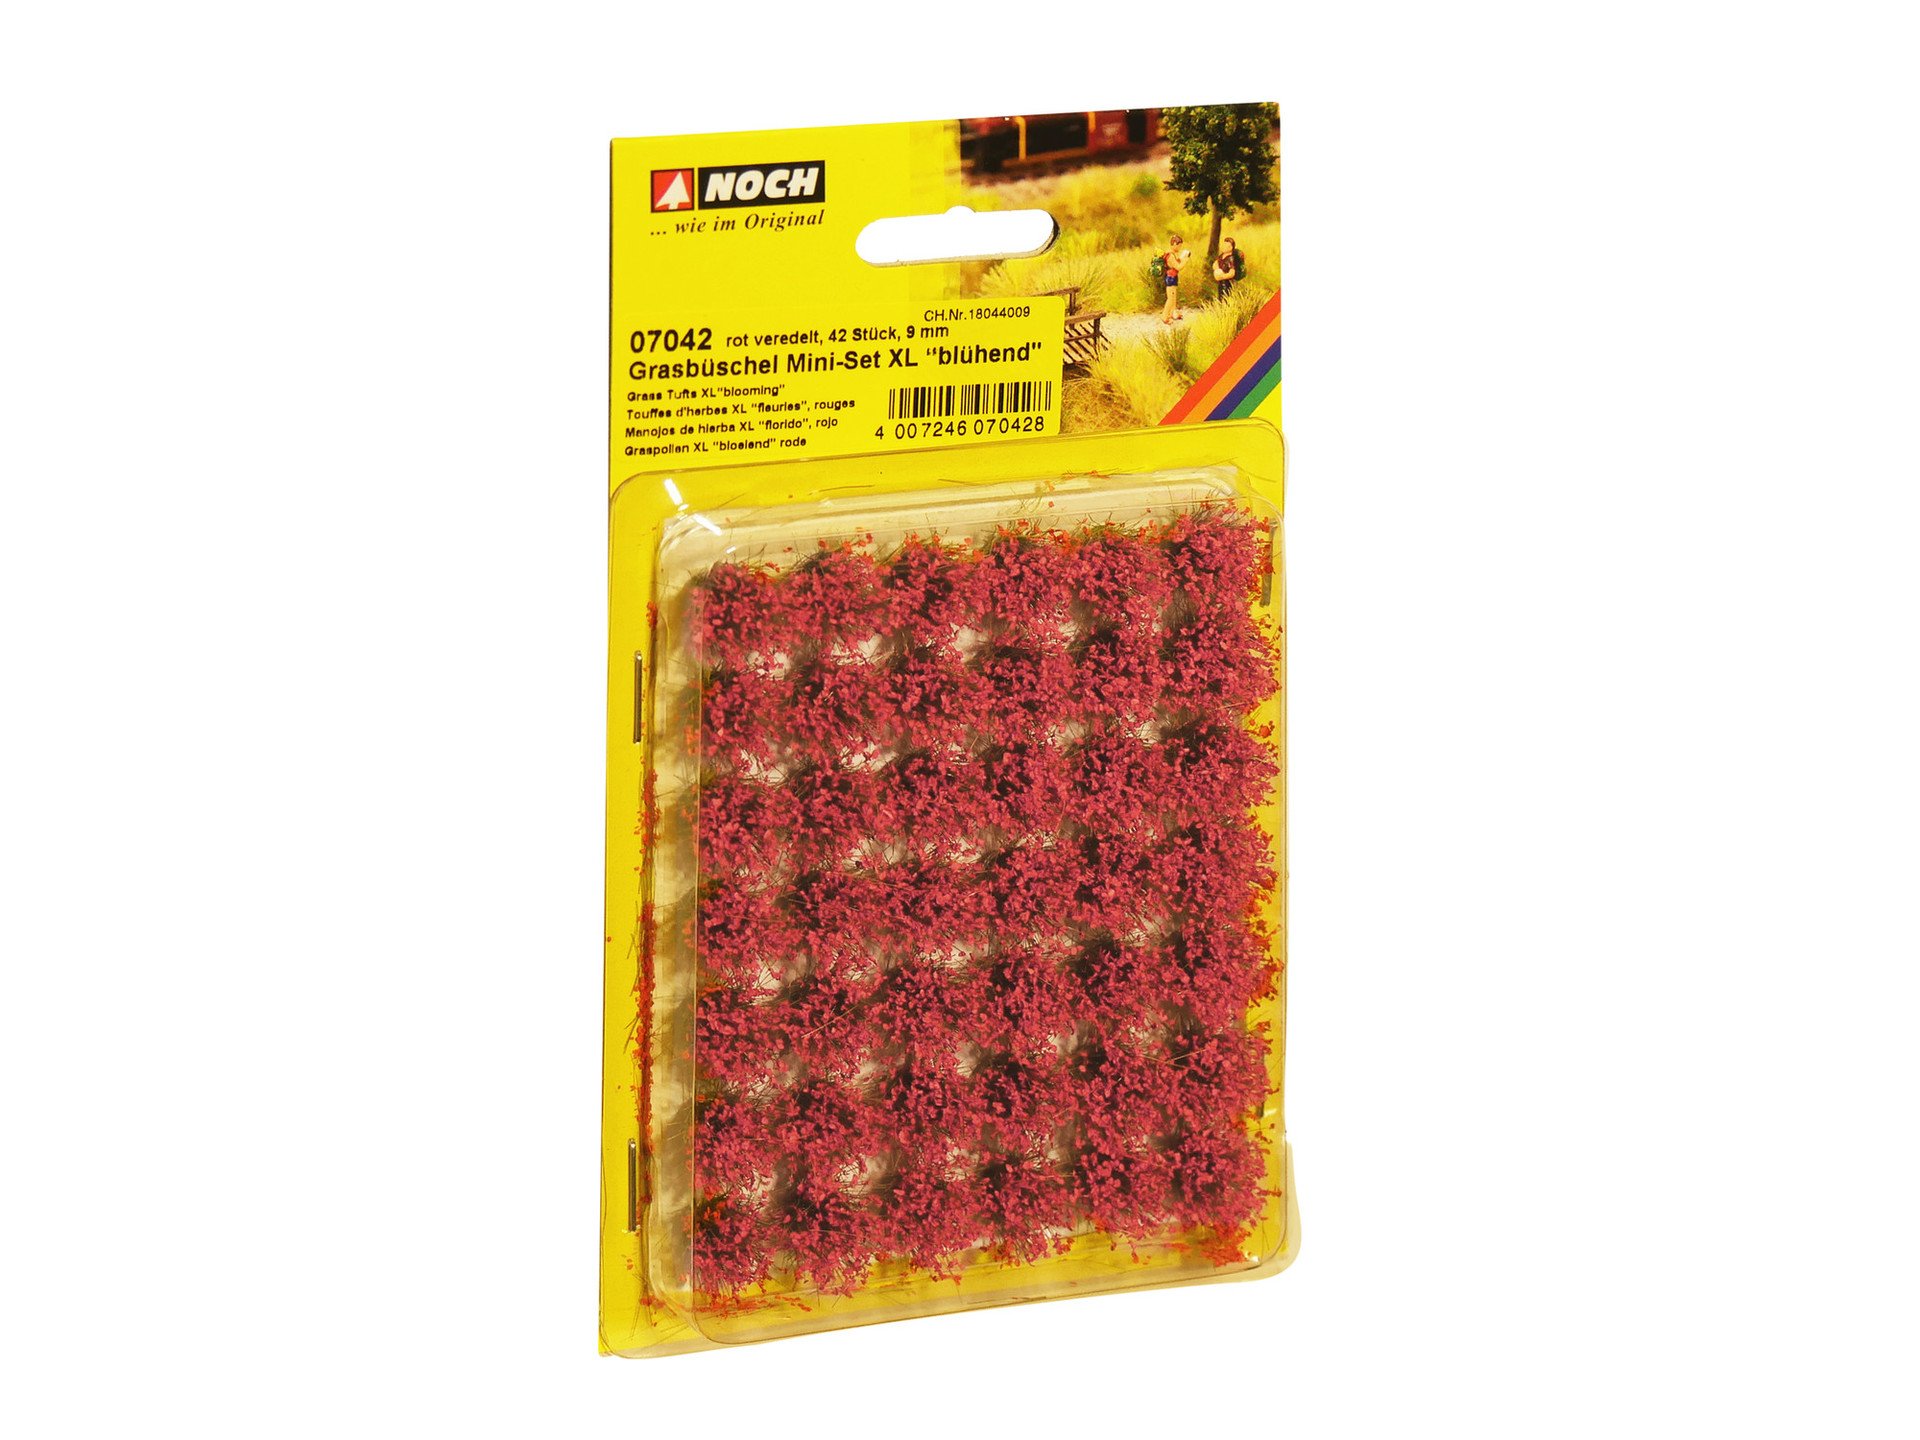 Grasbüschel Mini Set XL blühend, rot veredelt, 42 Stück, 9 mm